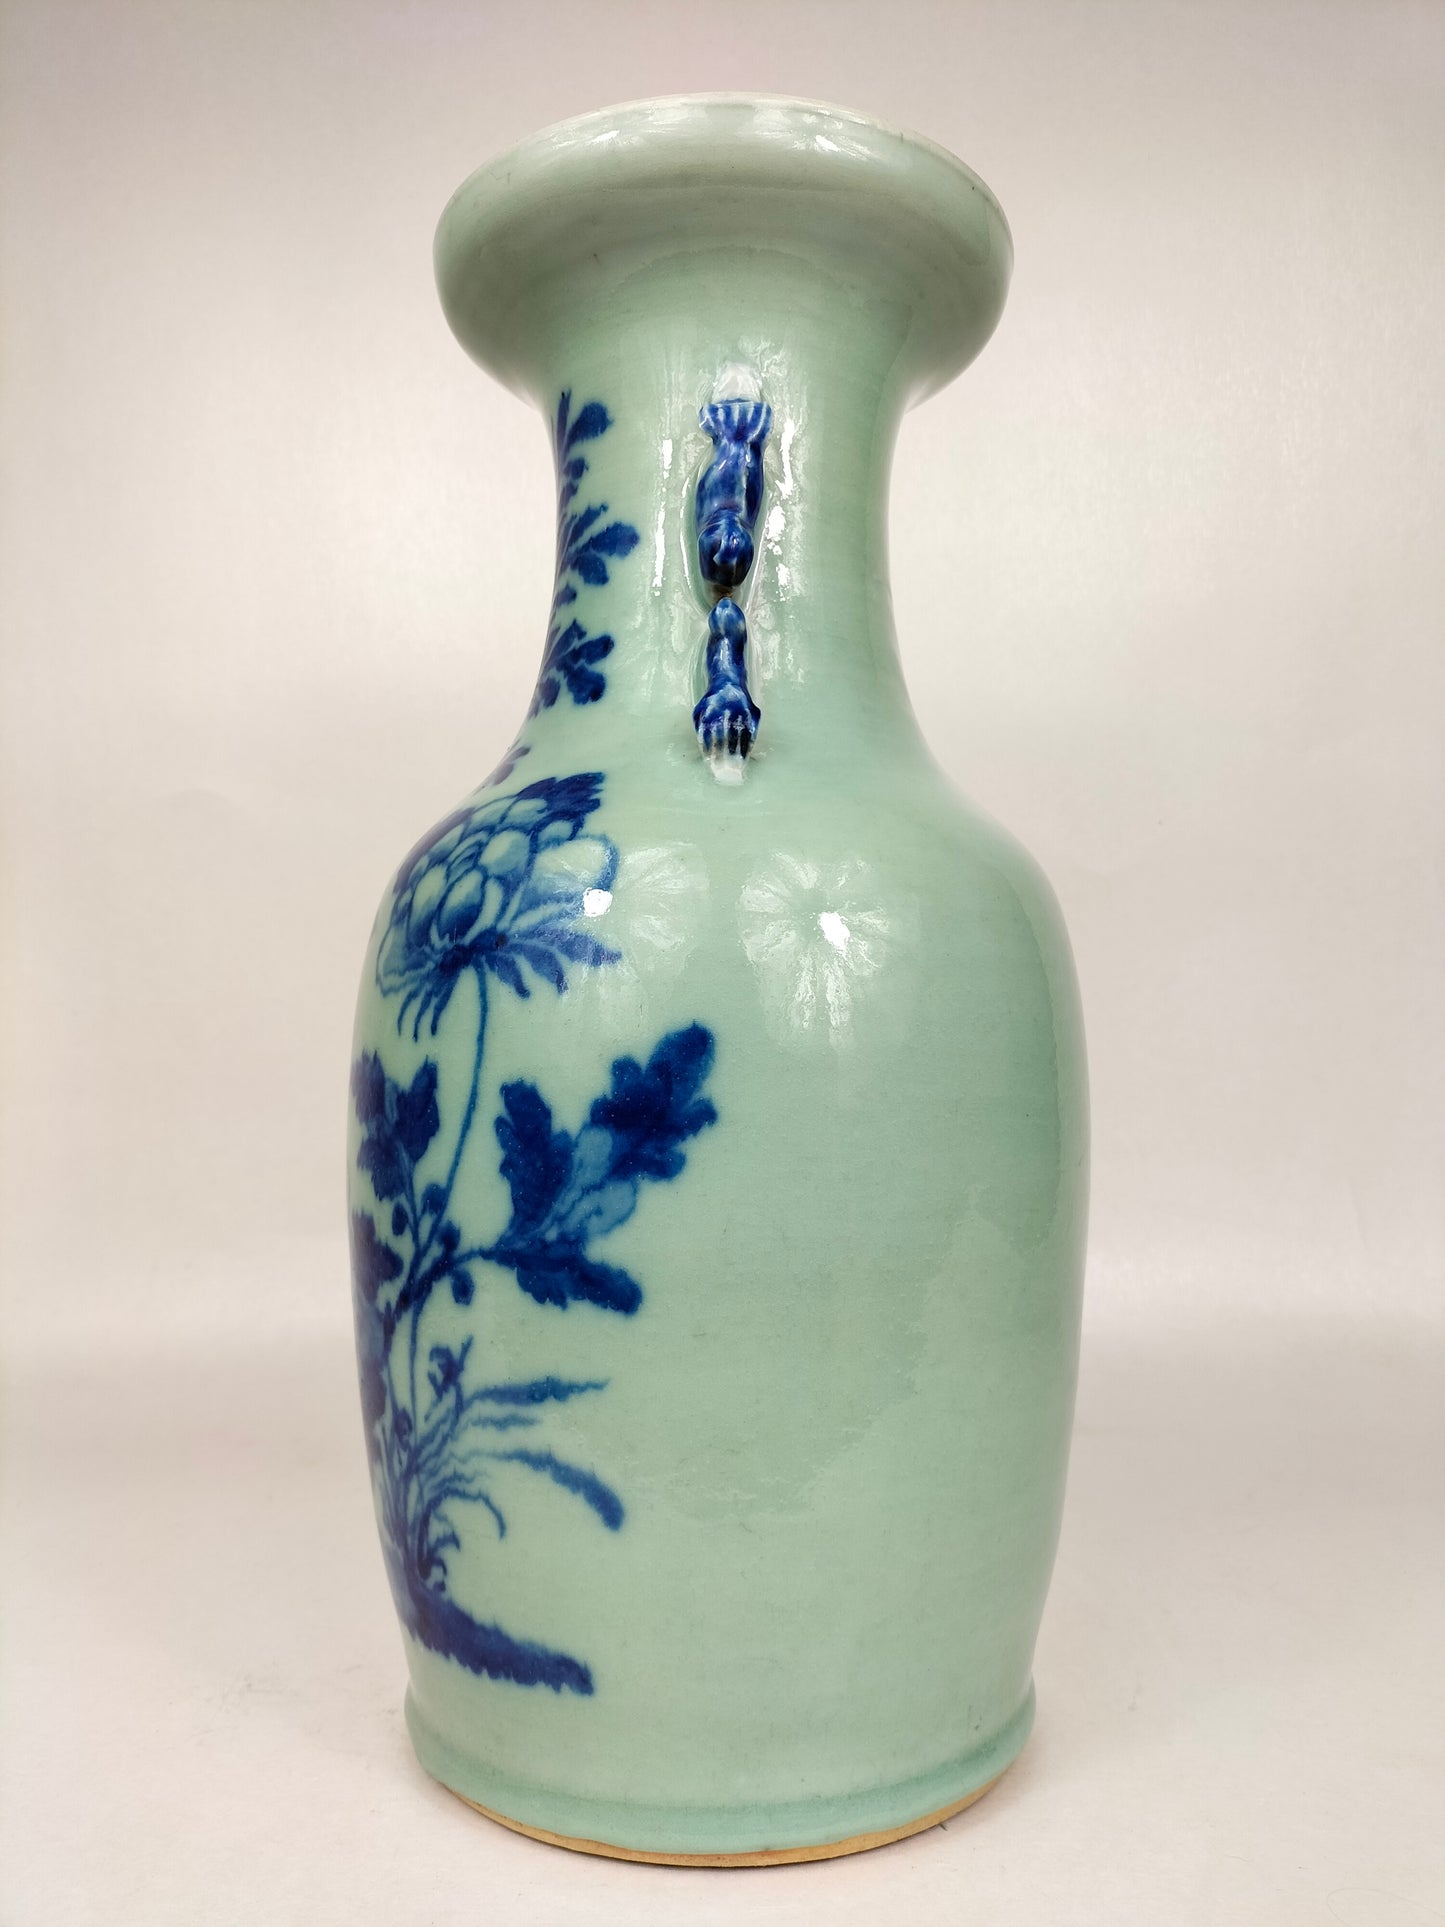 Vase chinois antique couleur céladon à décor d'oiseau et de fleurs // Dynastie Qing - 19ème siècle